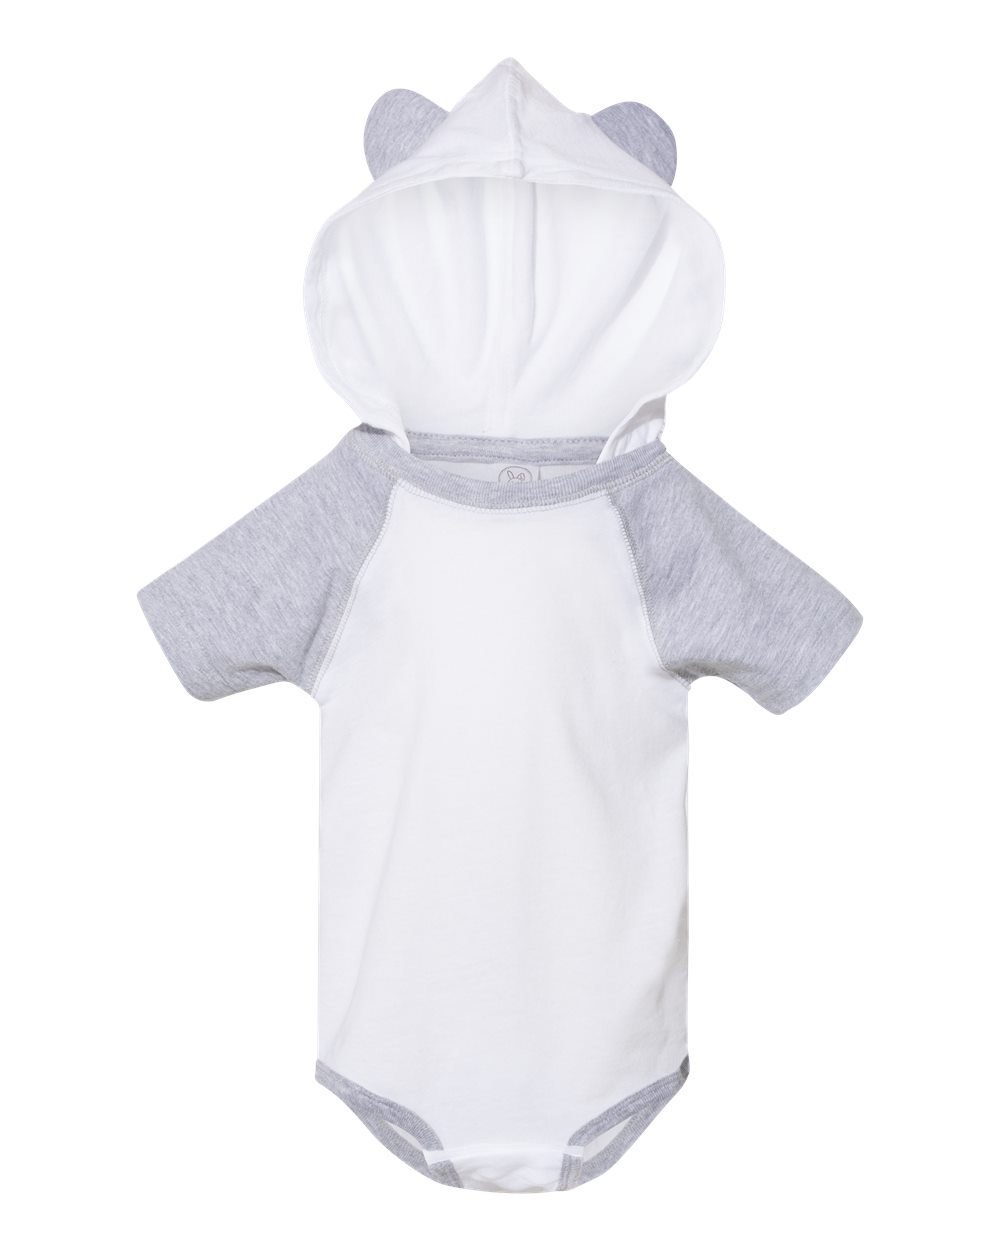 Fine Jersey Infant Short Sleeve Raglan Bodysuit with Hood & Ears - 4417-BSI